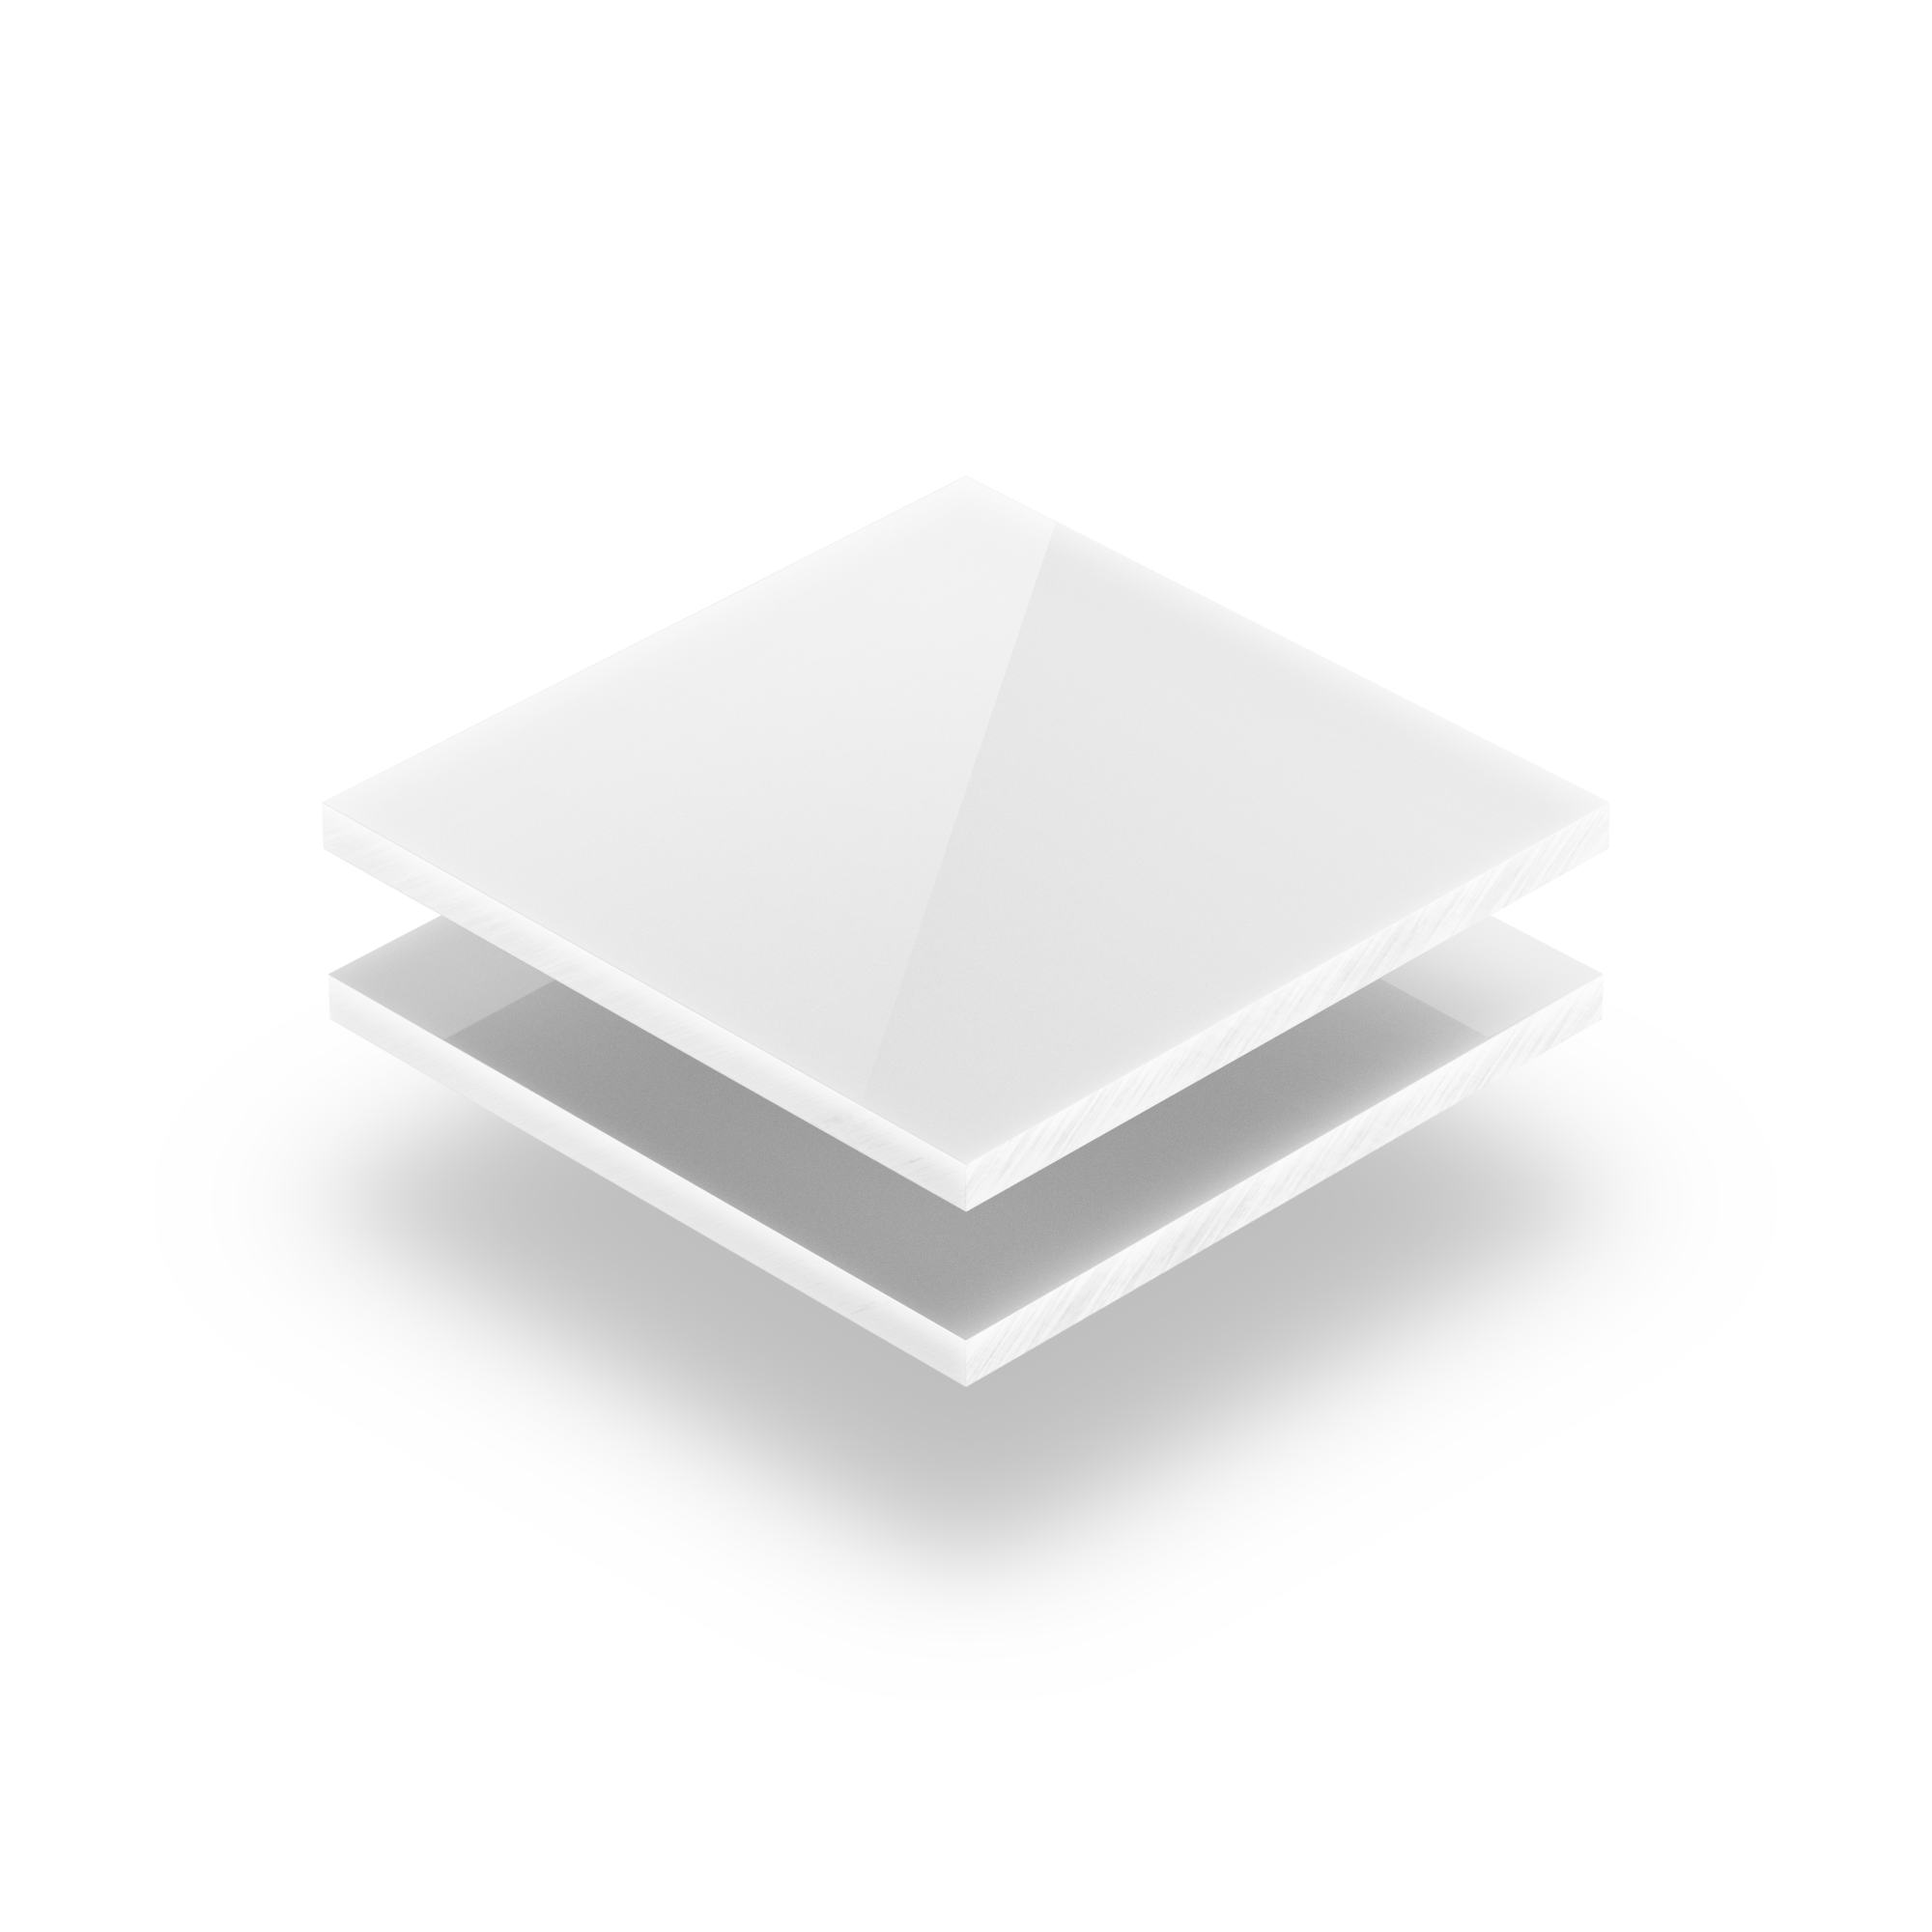 Découpe de Plaque Plexiglass Opaque Blanc Brillant 20x20cm